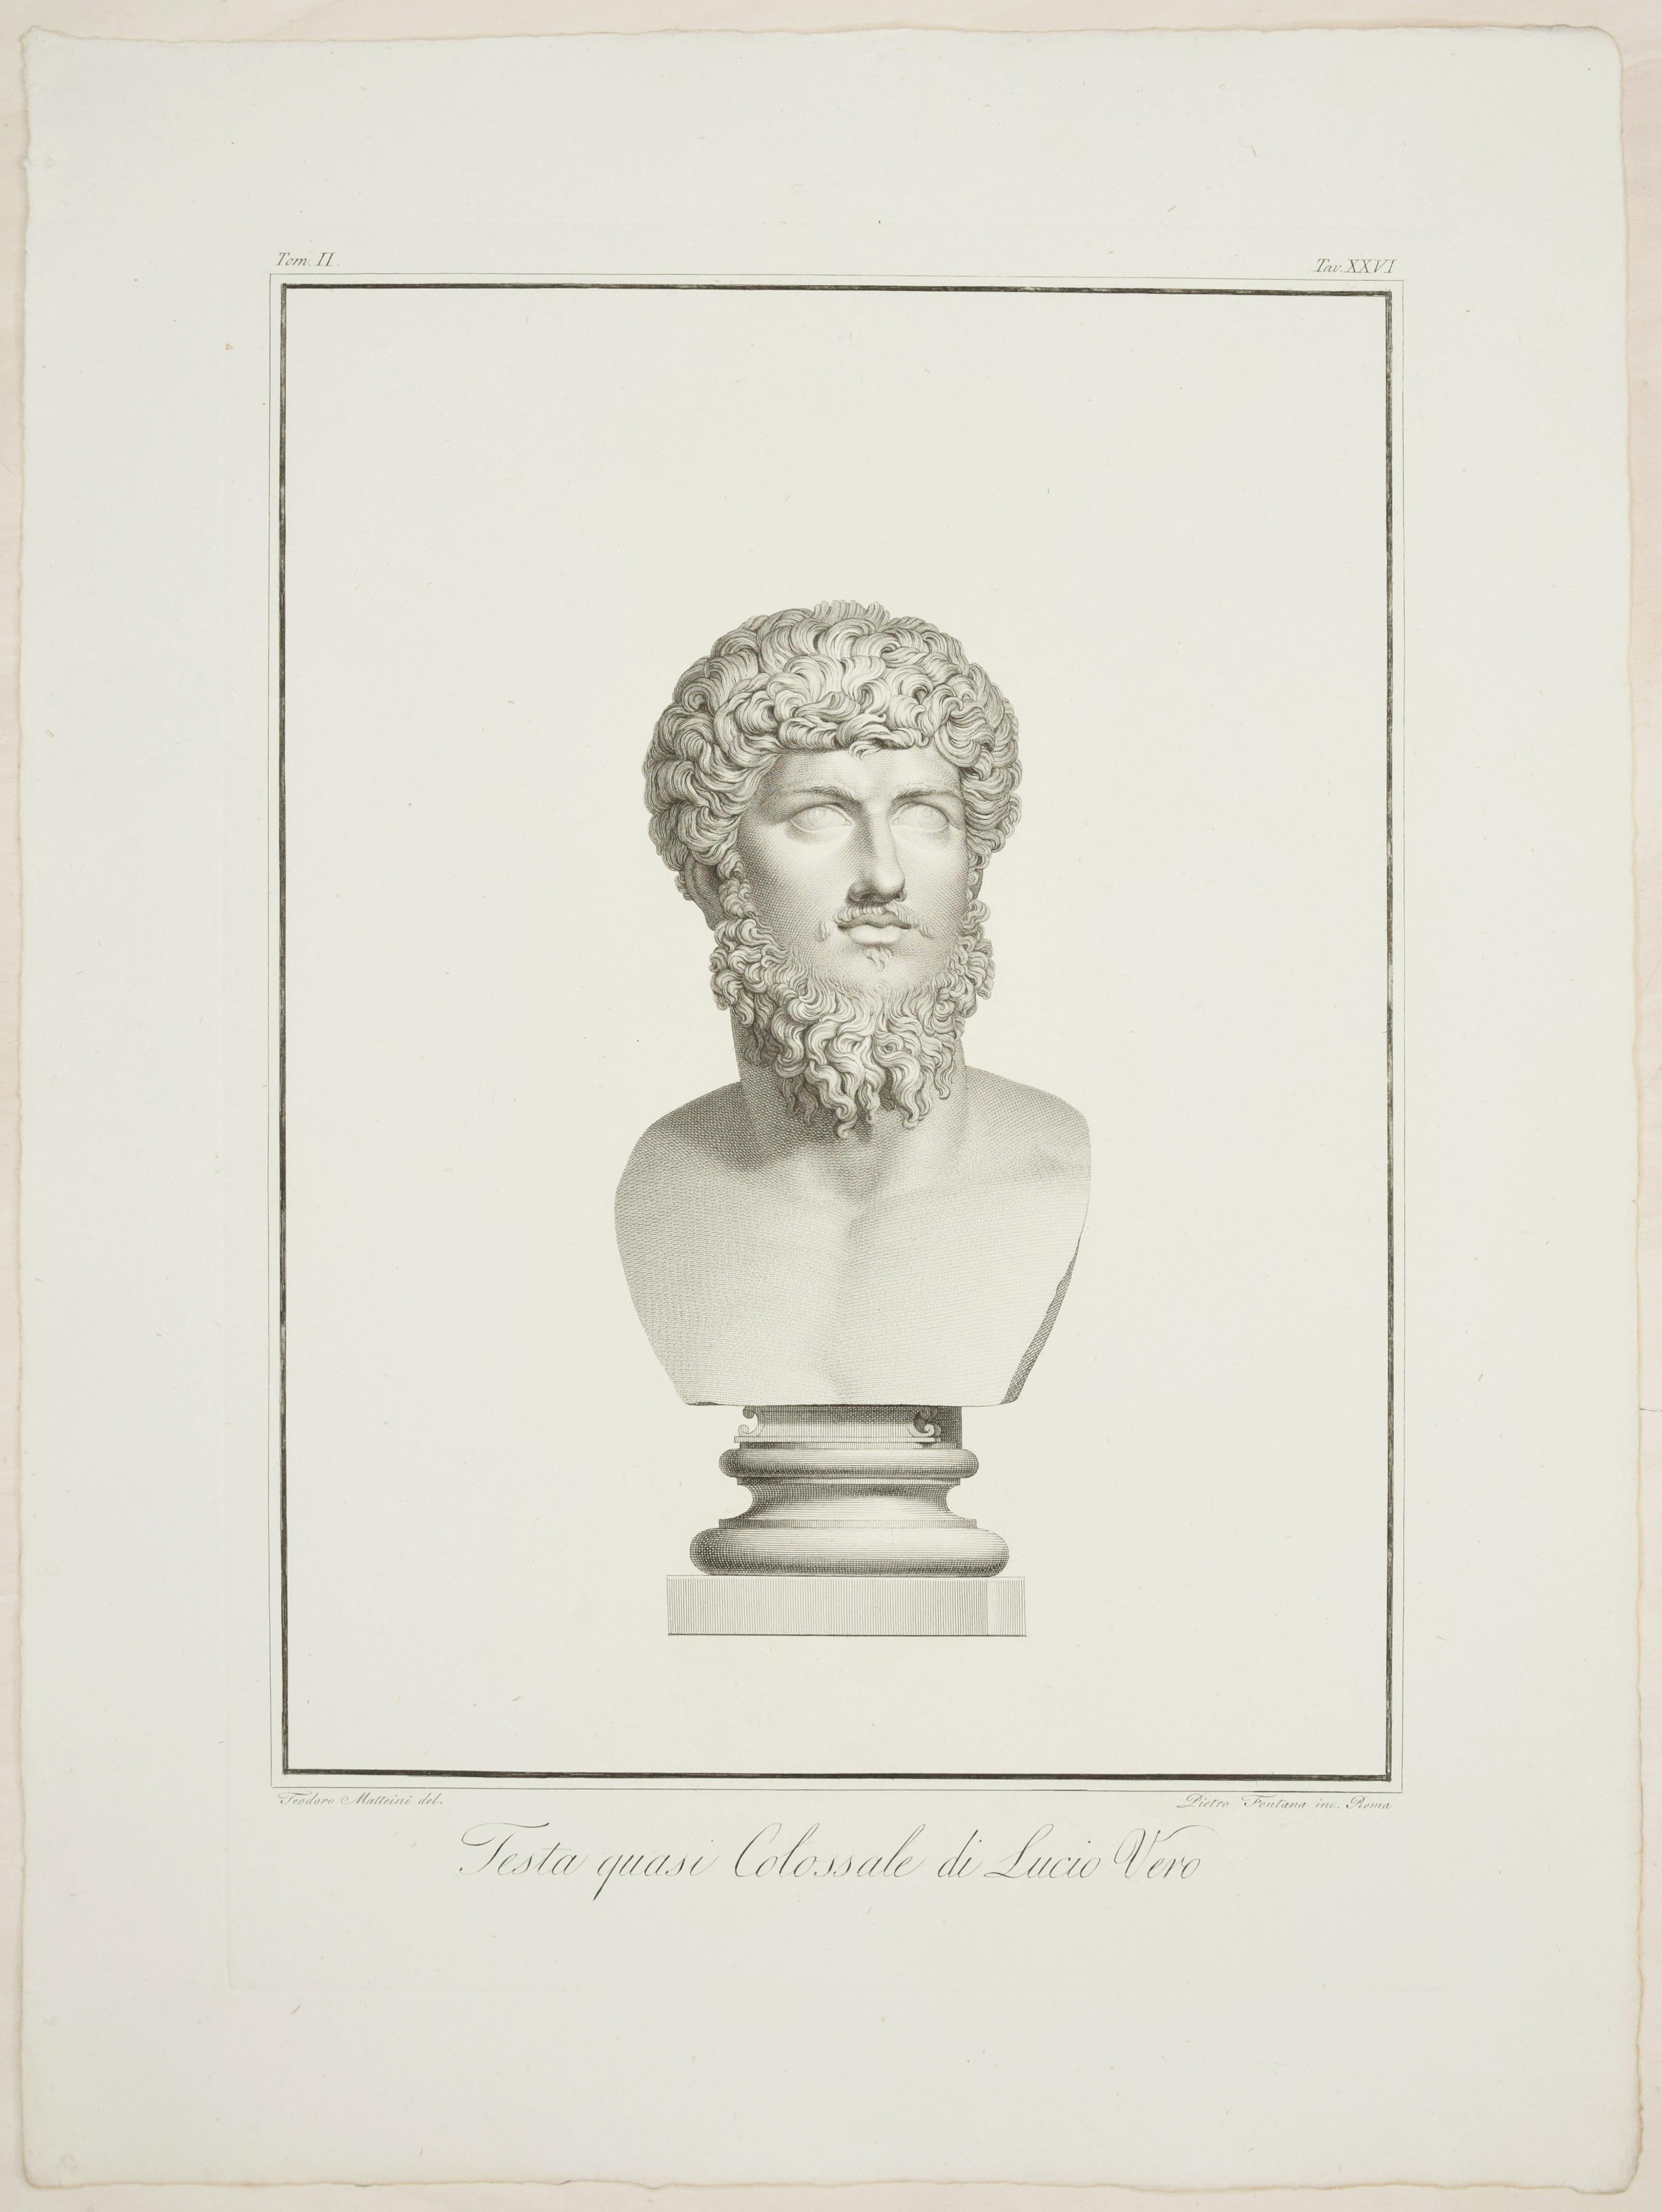 Francesco Cecchini Figurative Print - Testa Quasi Colossale di Lucio Vero - Etching by P. Fontana